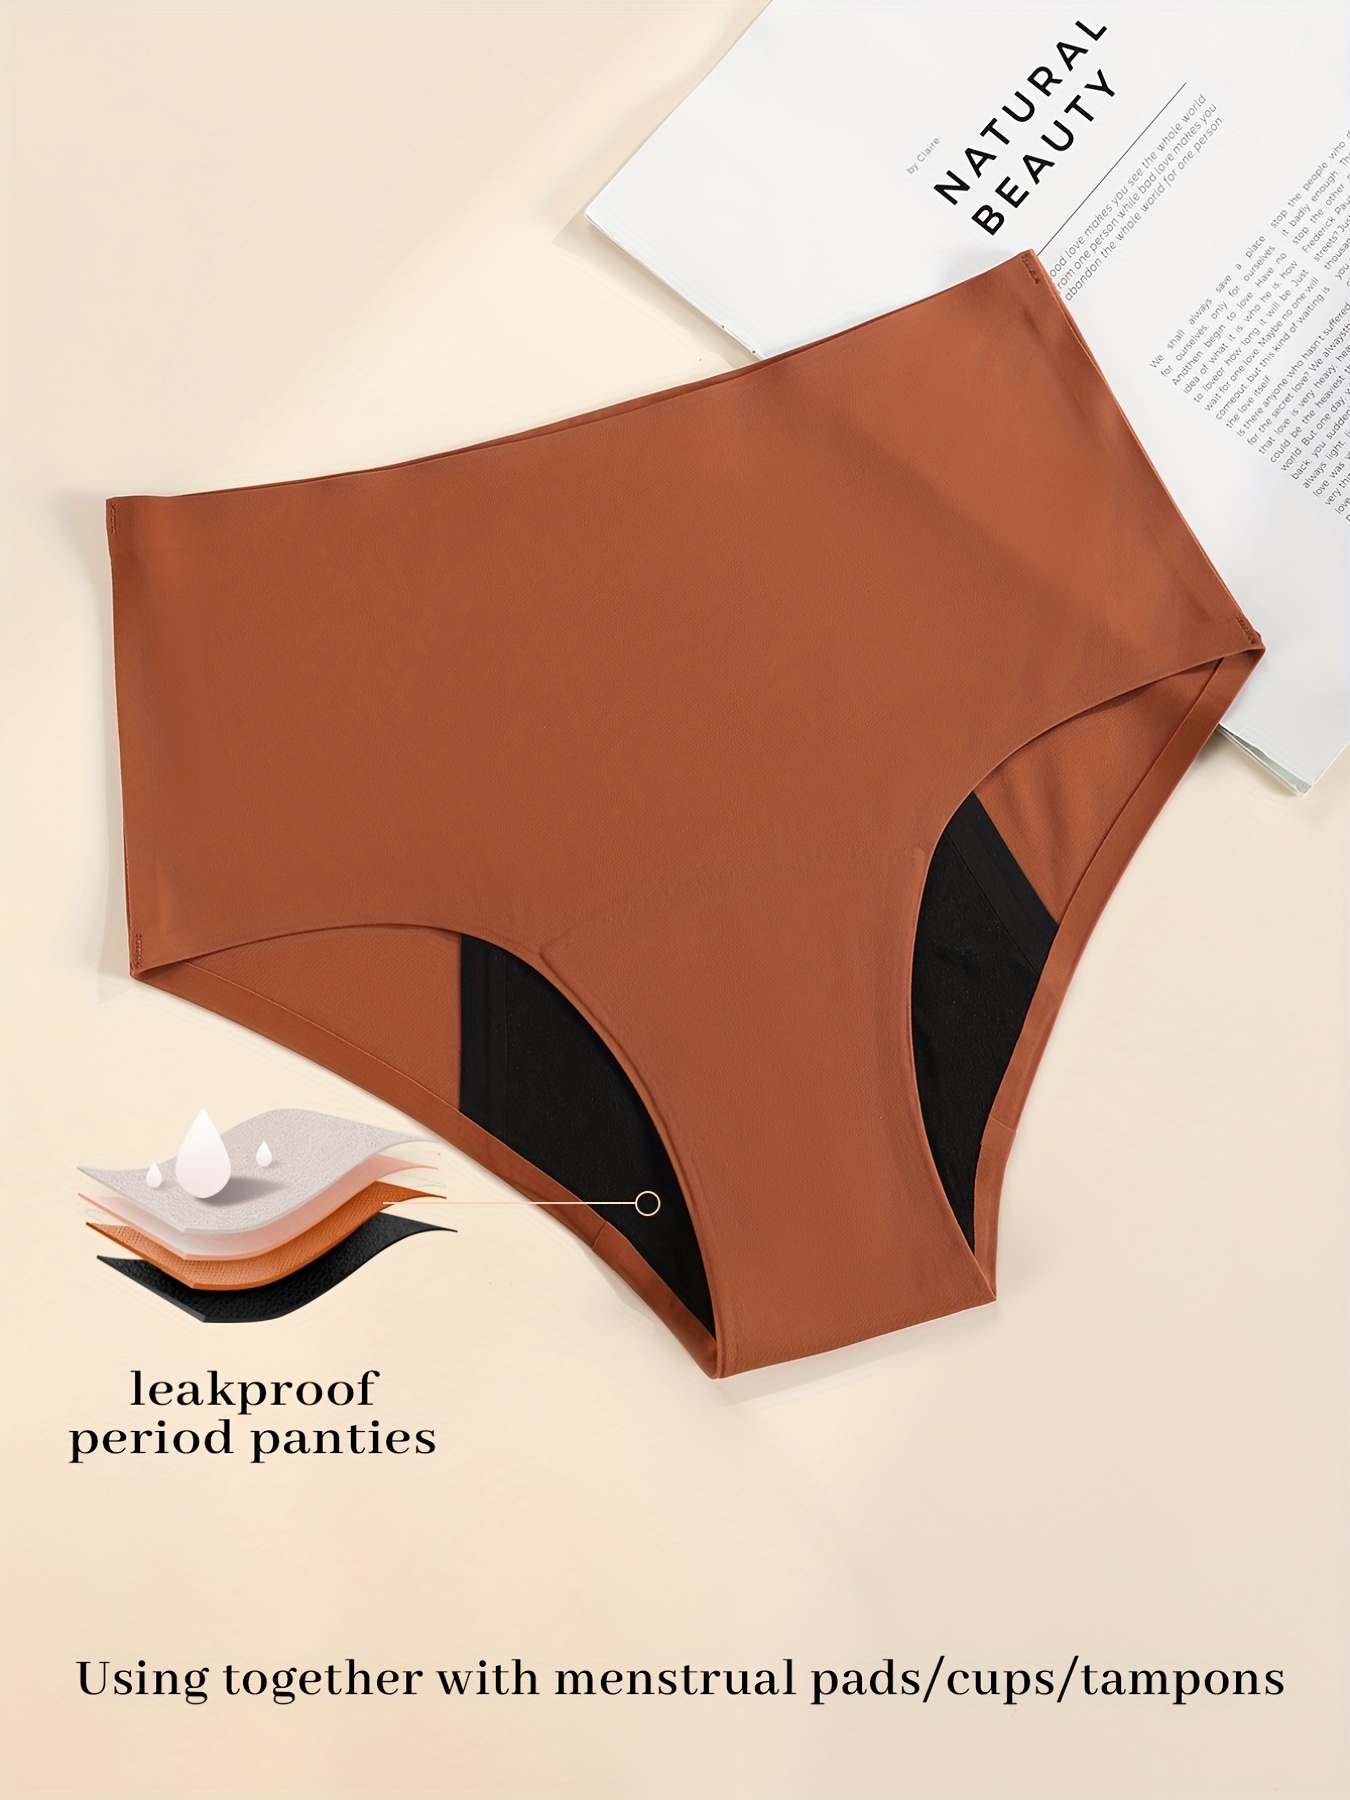  Hi-Waist Period Underwear For Women, Heavy